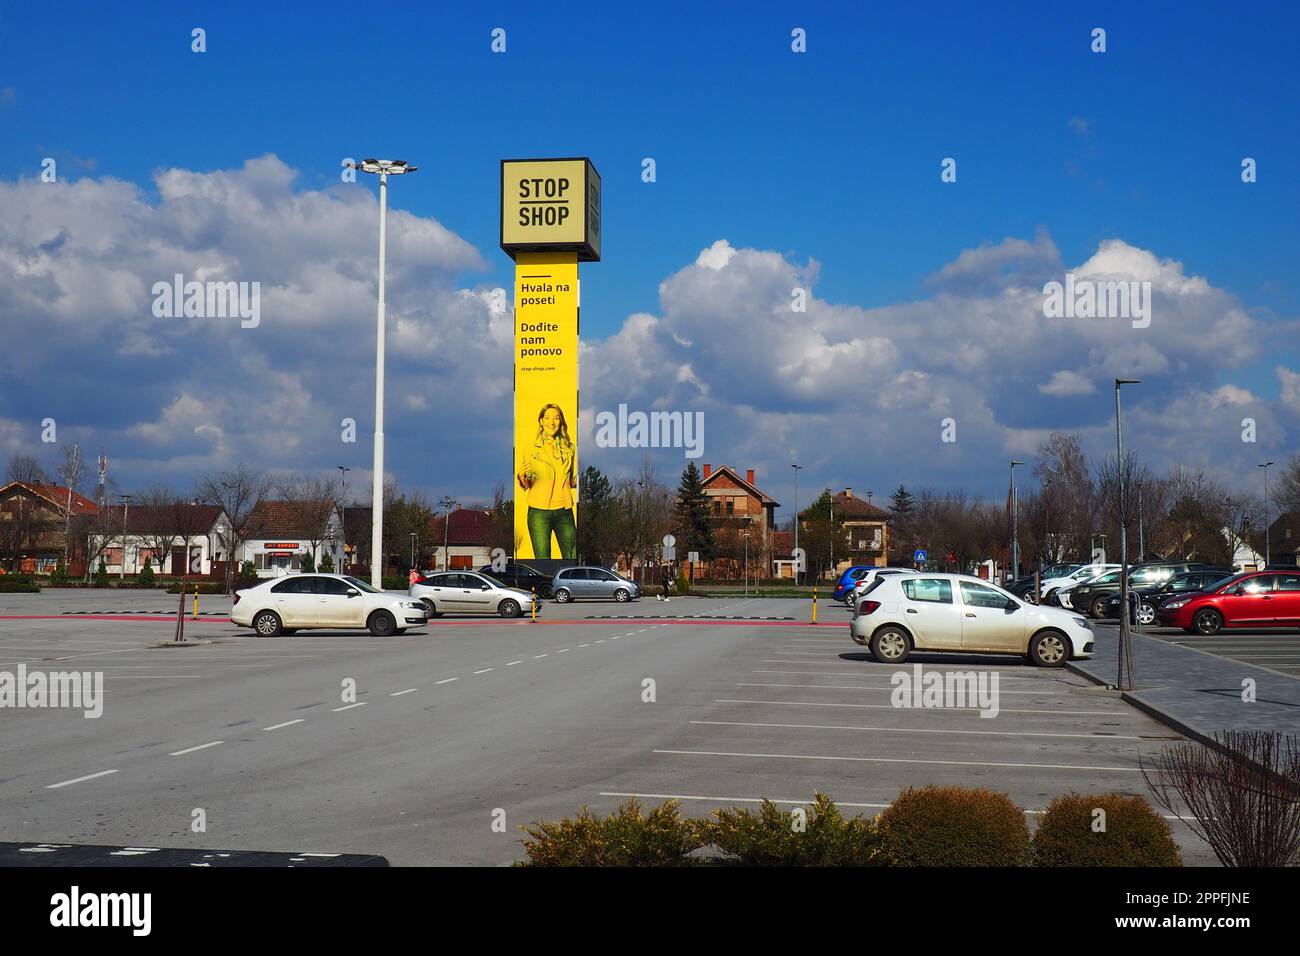 Épicerie Stop and Shop, poteau Stop Shop avec des noms de marque, peint en jaune. Parking devant un grand centre commercial. Sremska Mitrovica, Serbie, 16 mars 2023 Manie du shopping et consumérisme. Banque D'Images